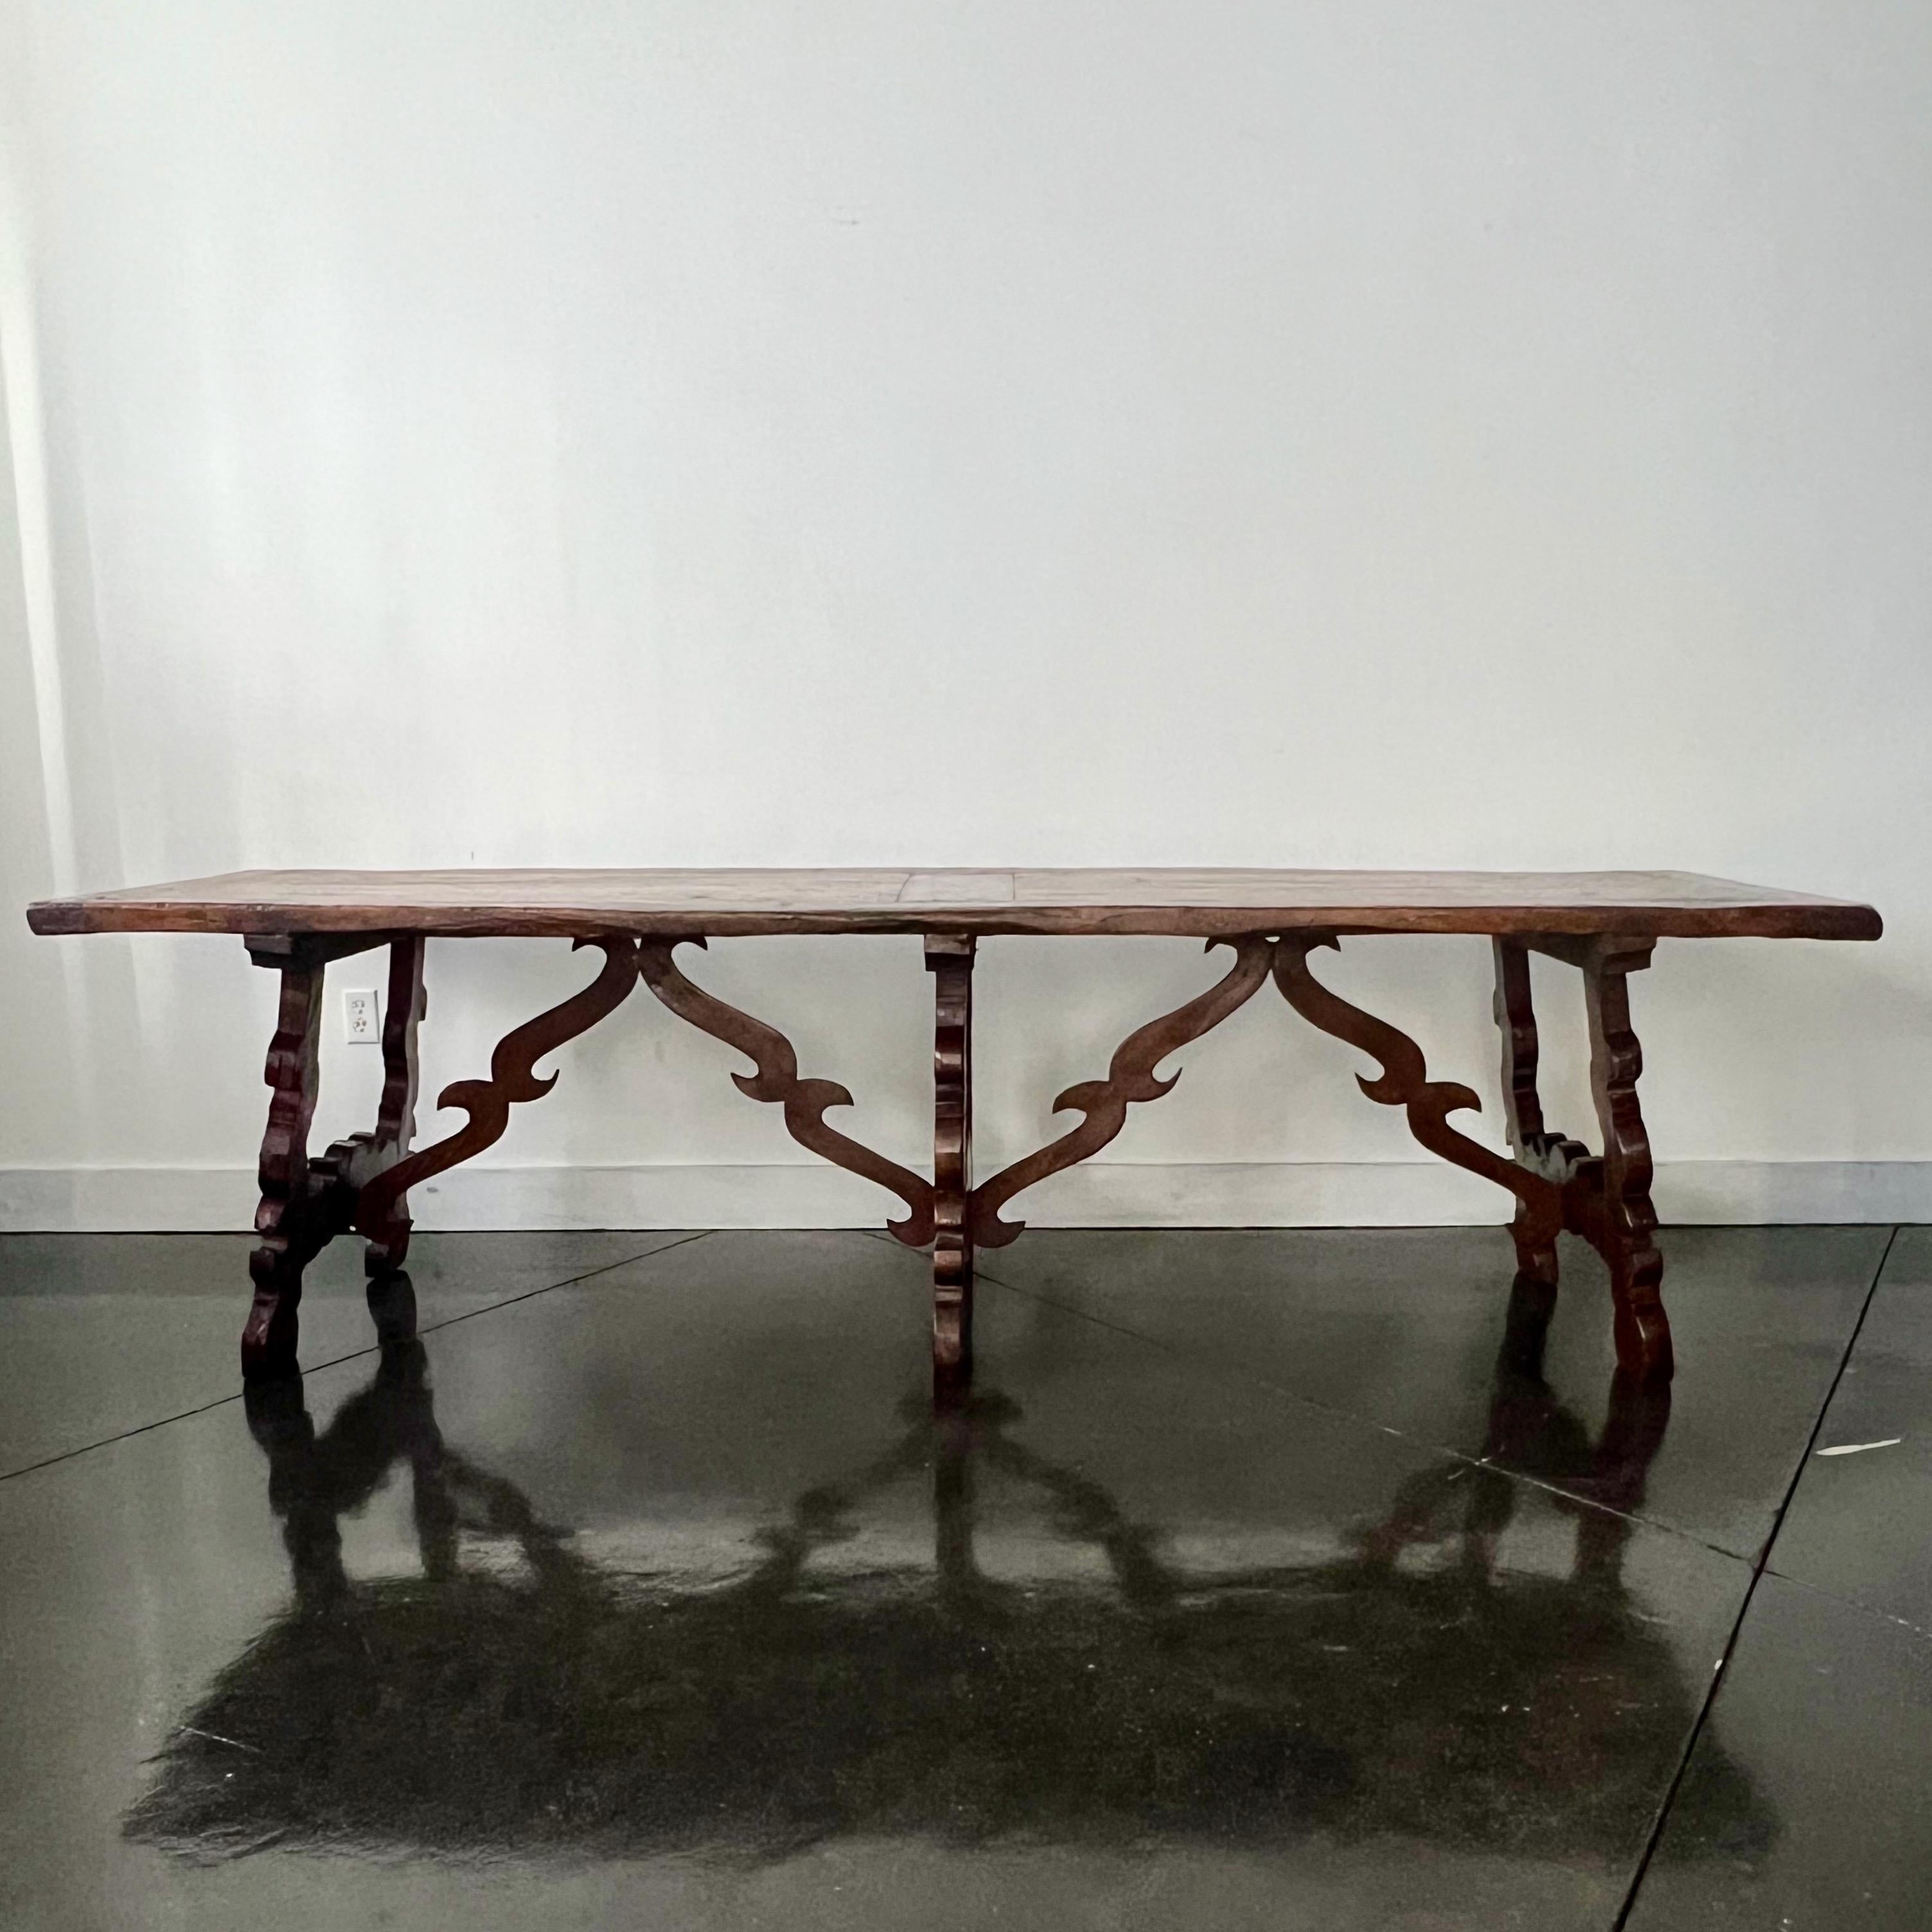 Bocktisch im spanischen Barockstil des 19. Jahrhunderts aus der Region Katalonien mit gerahmter Platte aus massivem Nussbaumholz auf drei skulptierten Lyra-Beinen -  verbunden durch geschnitzte Holzstrecker.
Sehr solider langer Tisch  - 10 oder mehr